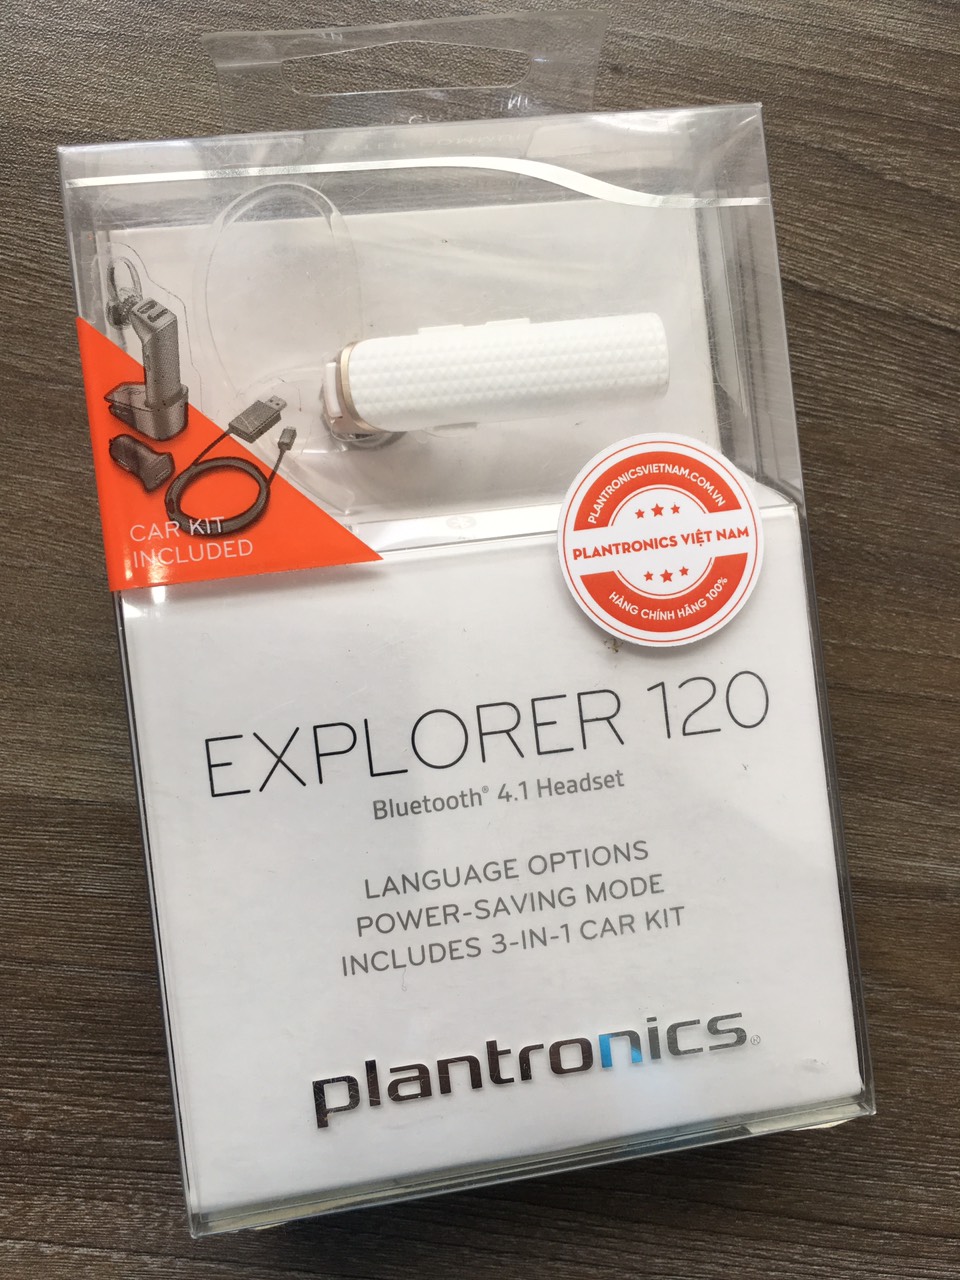 Troosteloos paus Watt Tai nghe Bluetooth Nhét Tai Plantronics Explorer 120 - Hàng chính hãng